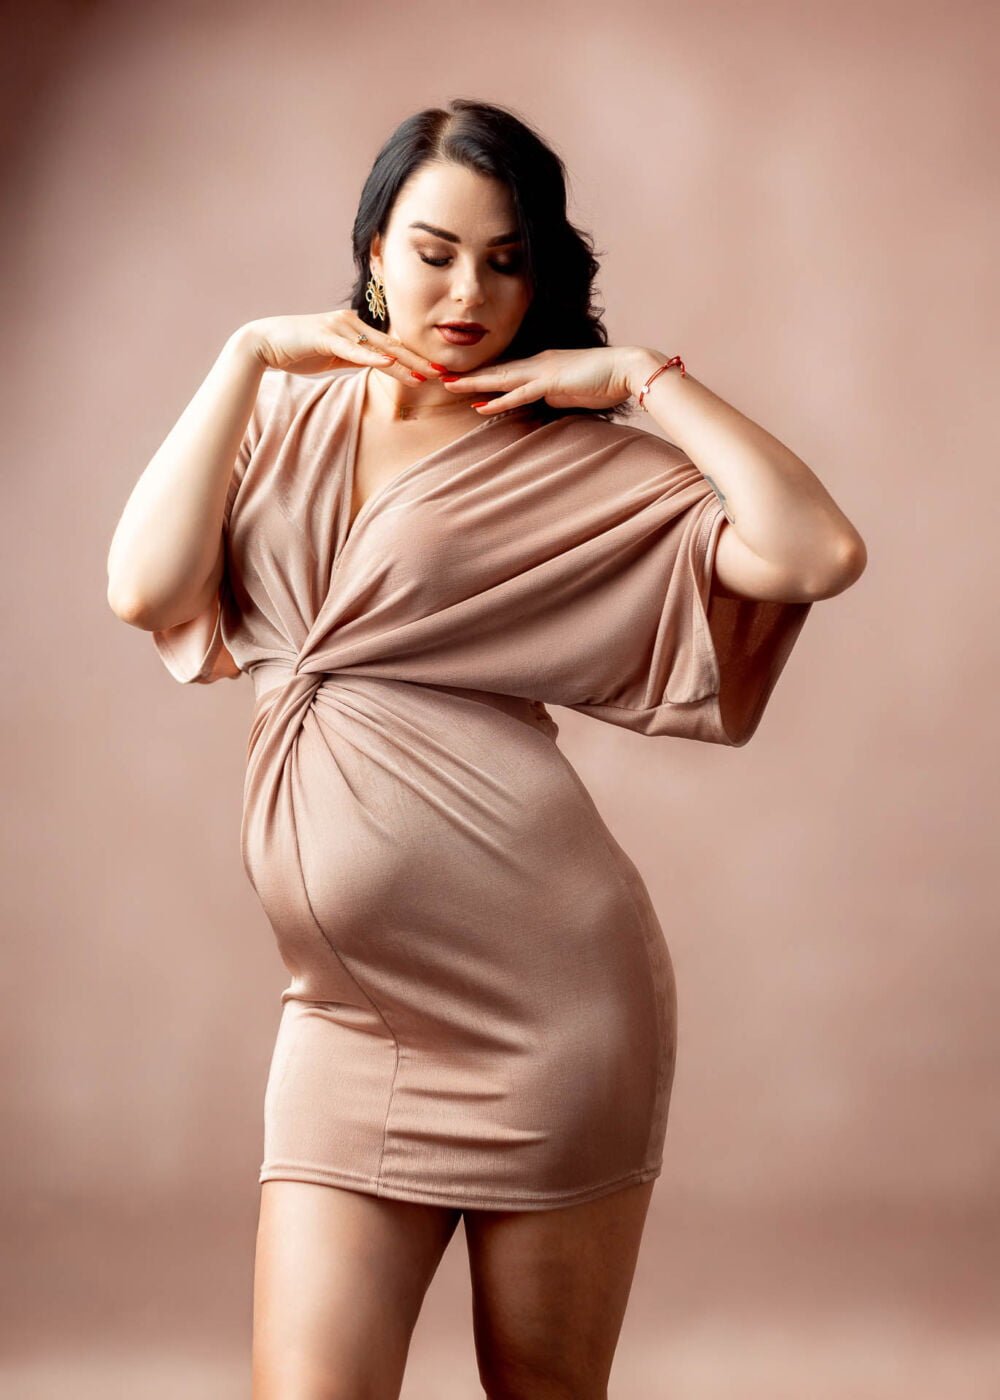 Czarująca sesja ciążowa w studio, z przyszłą mamą ubraną w stylową, koronkową suknię, podkreślającą piękno jej sylwetki